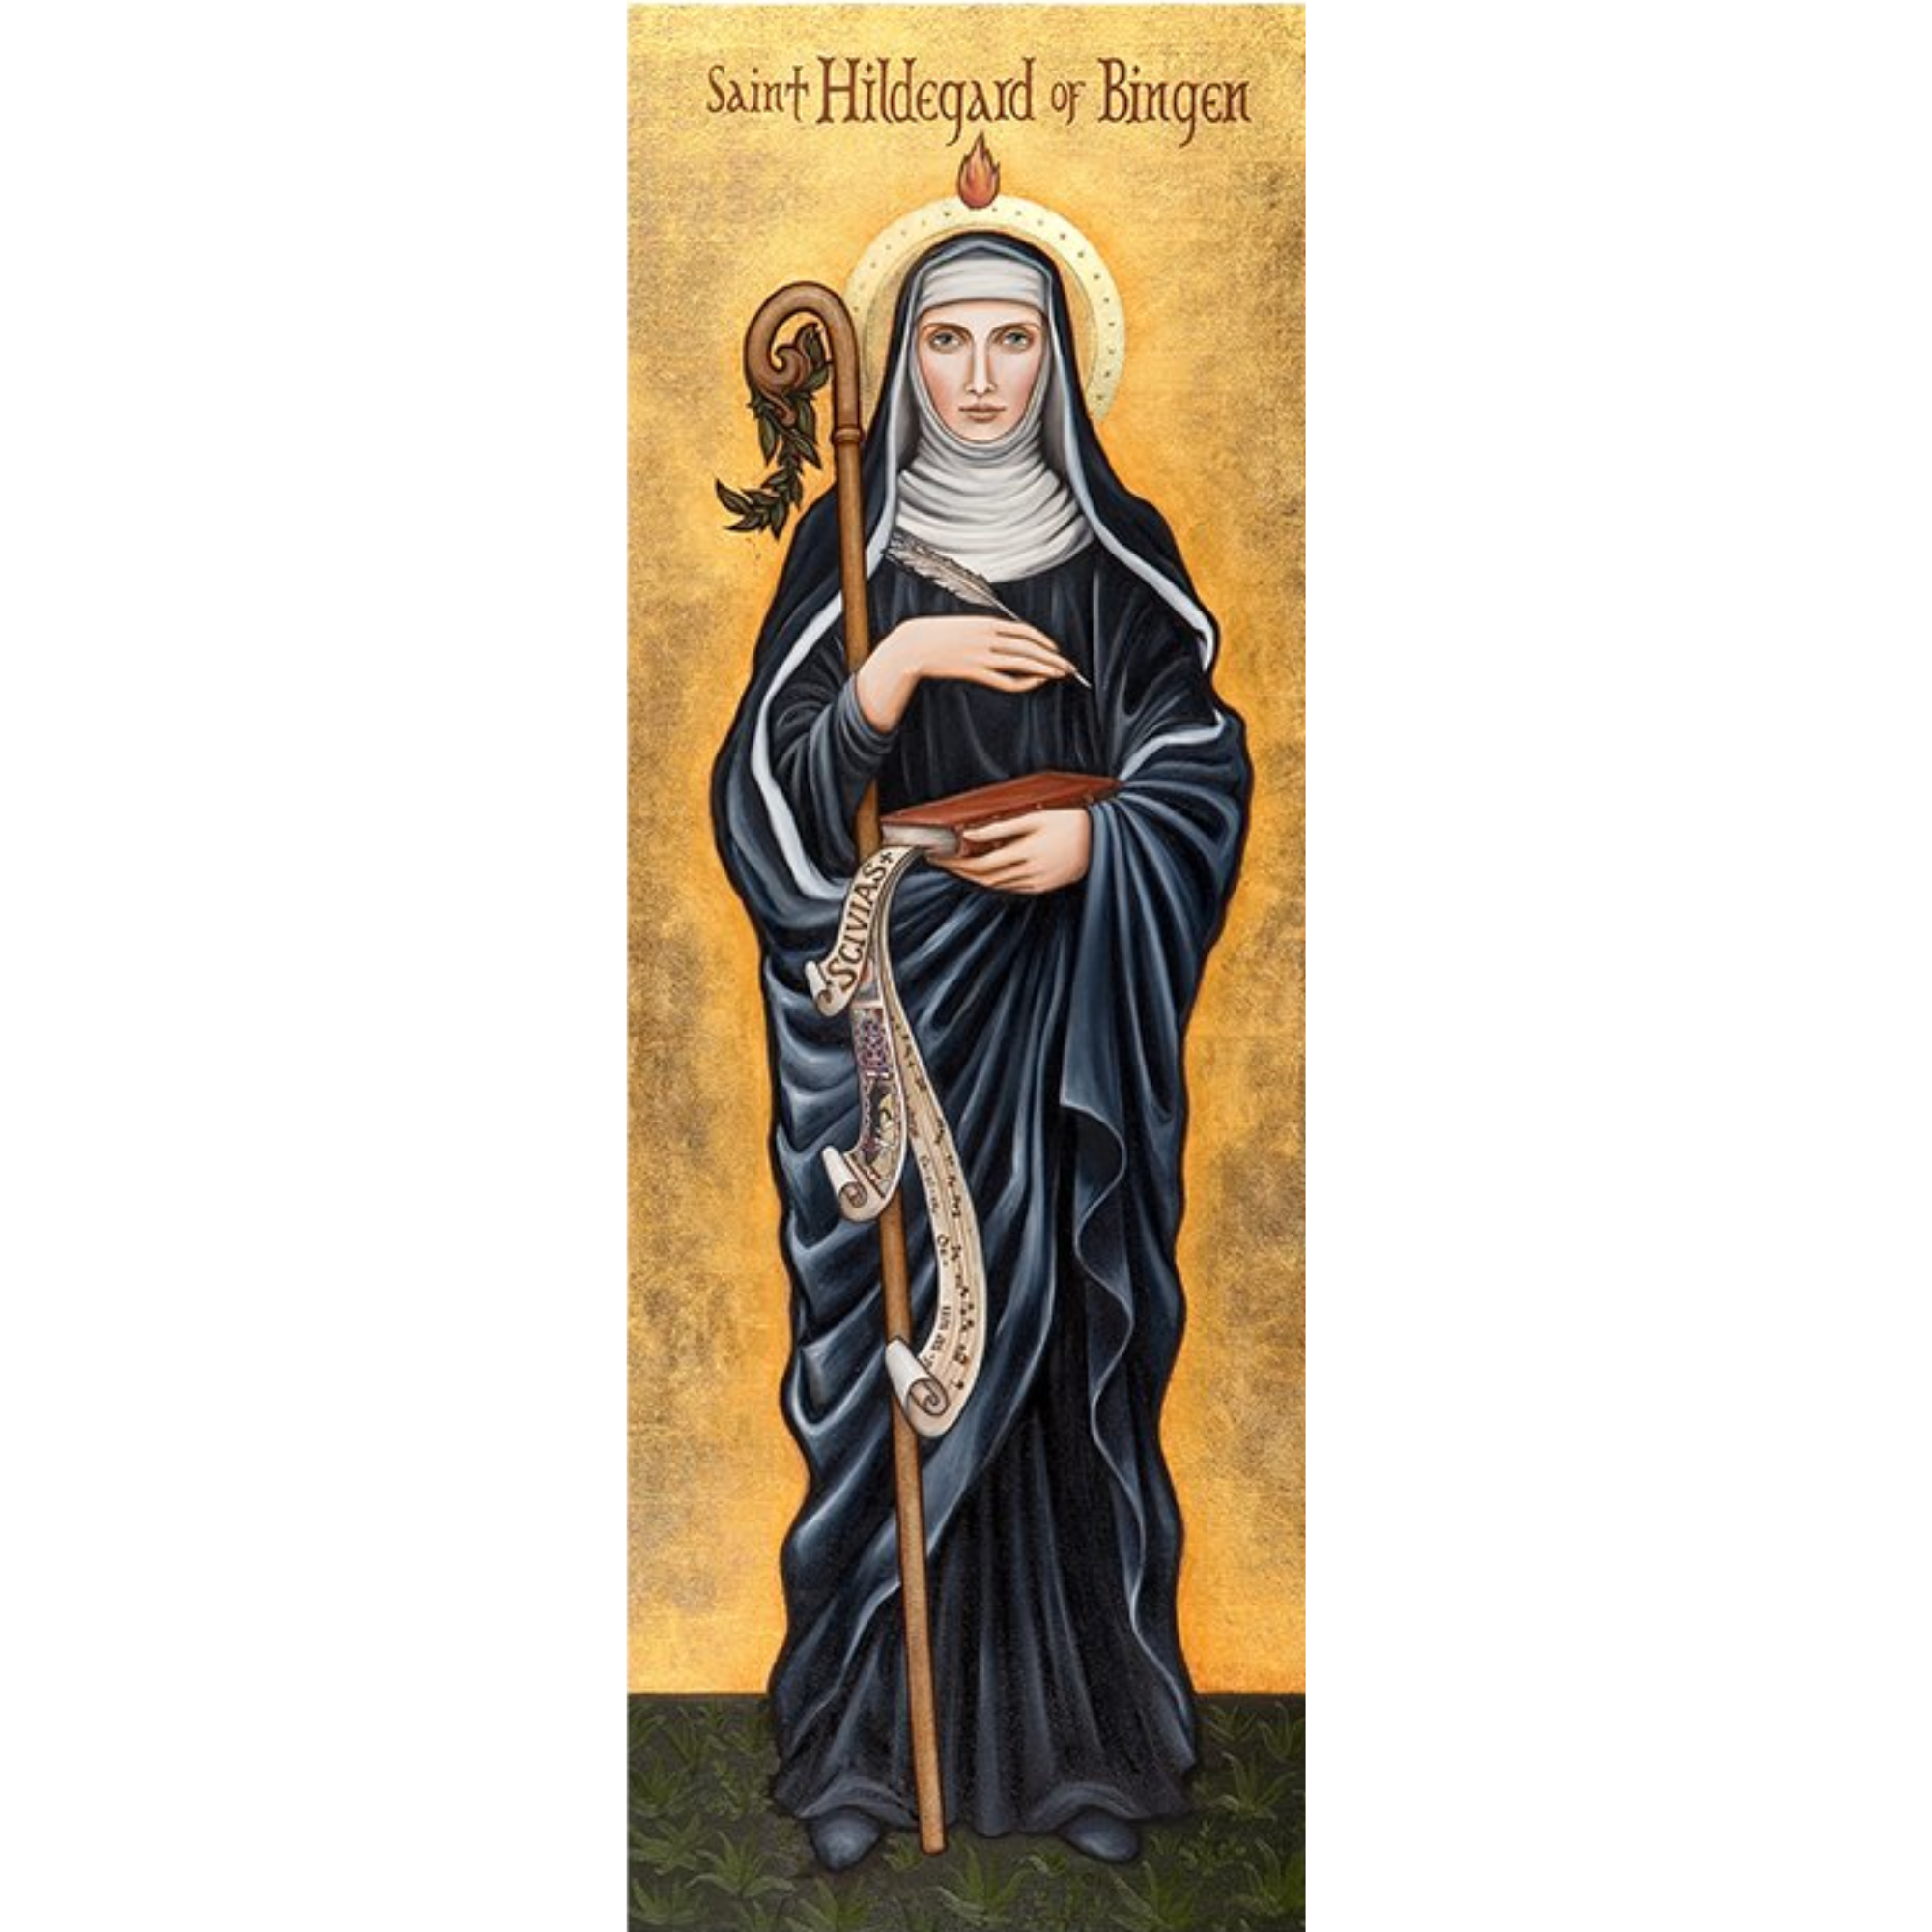 St Hildegard of Bingen